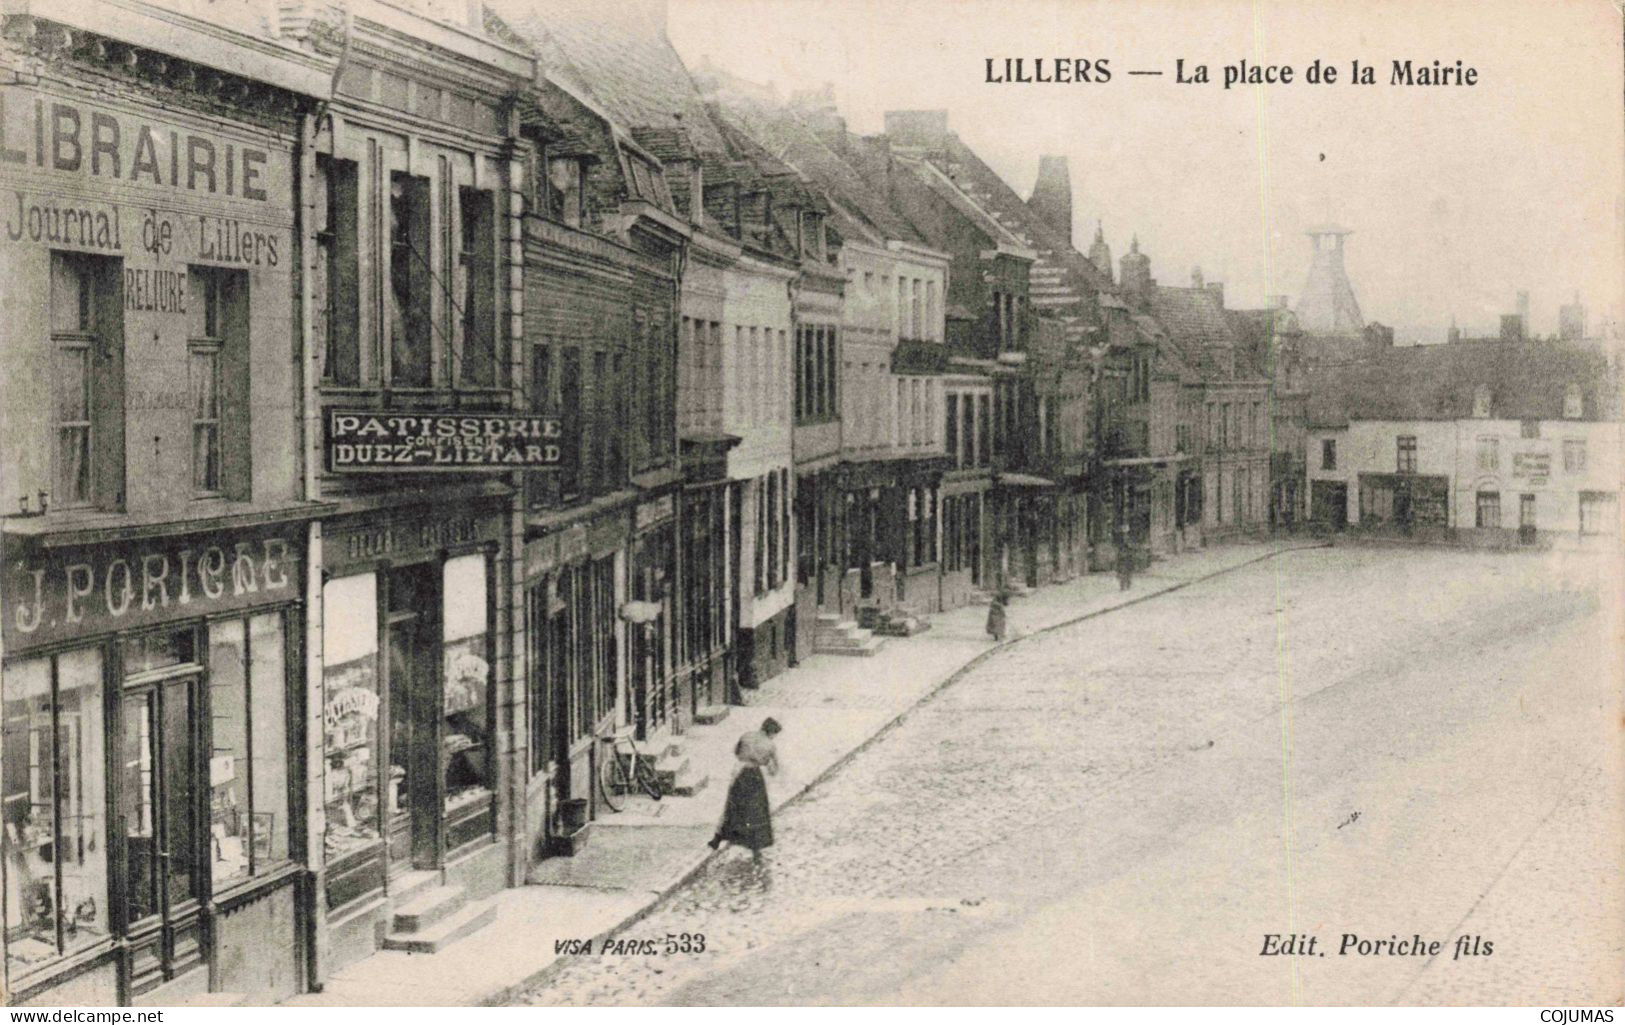 62 - LILLERS - S13134 - La Place De La Mairie - Librairie Poriche - Pâtisserie Duez Lietard - L1 - Lillers